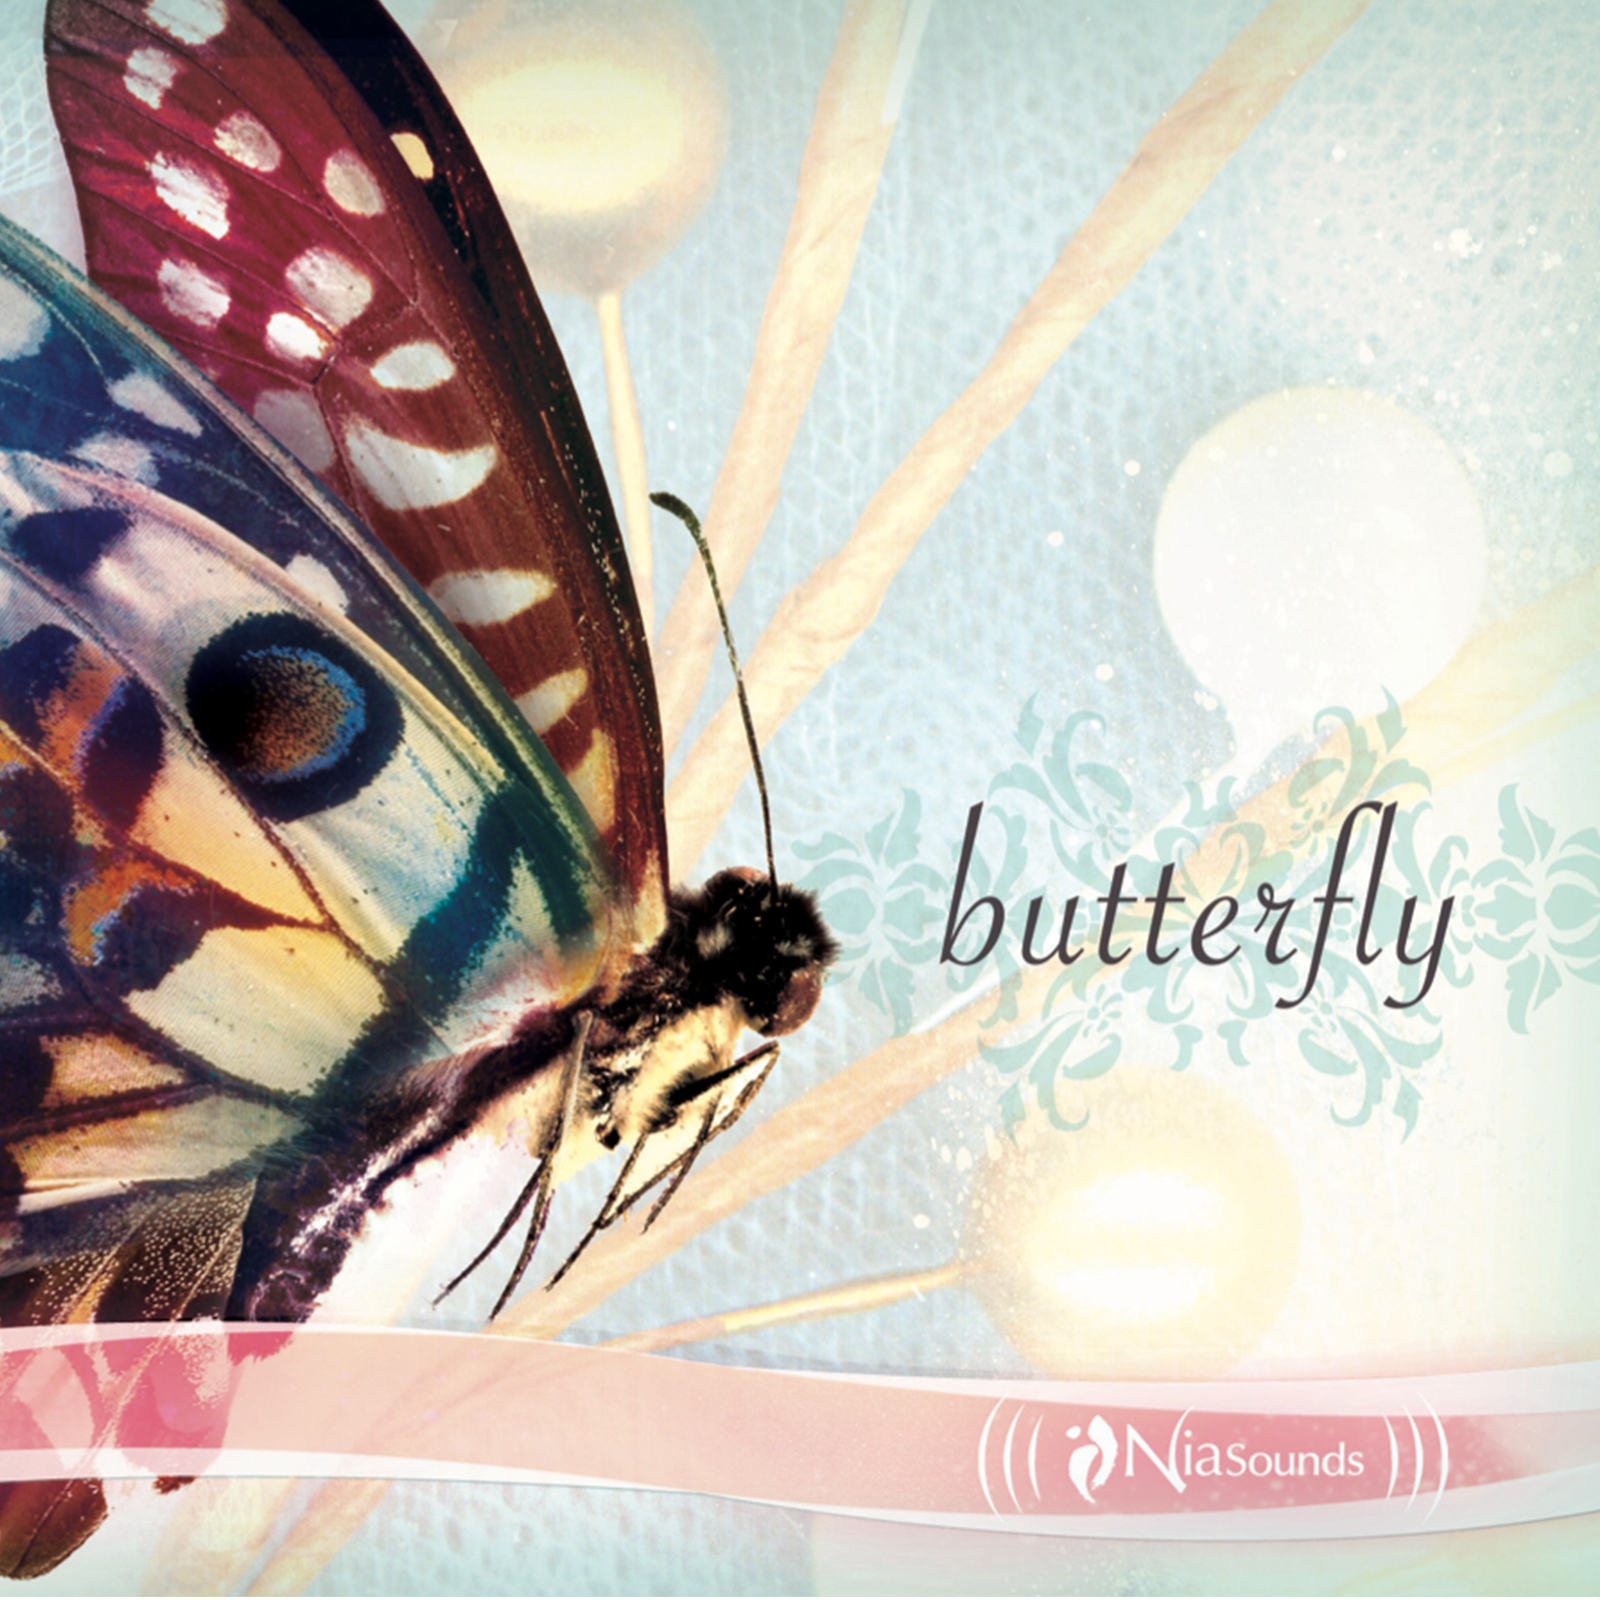 U give me Butterflies. Koan two Moon Butterflies CD. Feeling butterflies